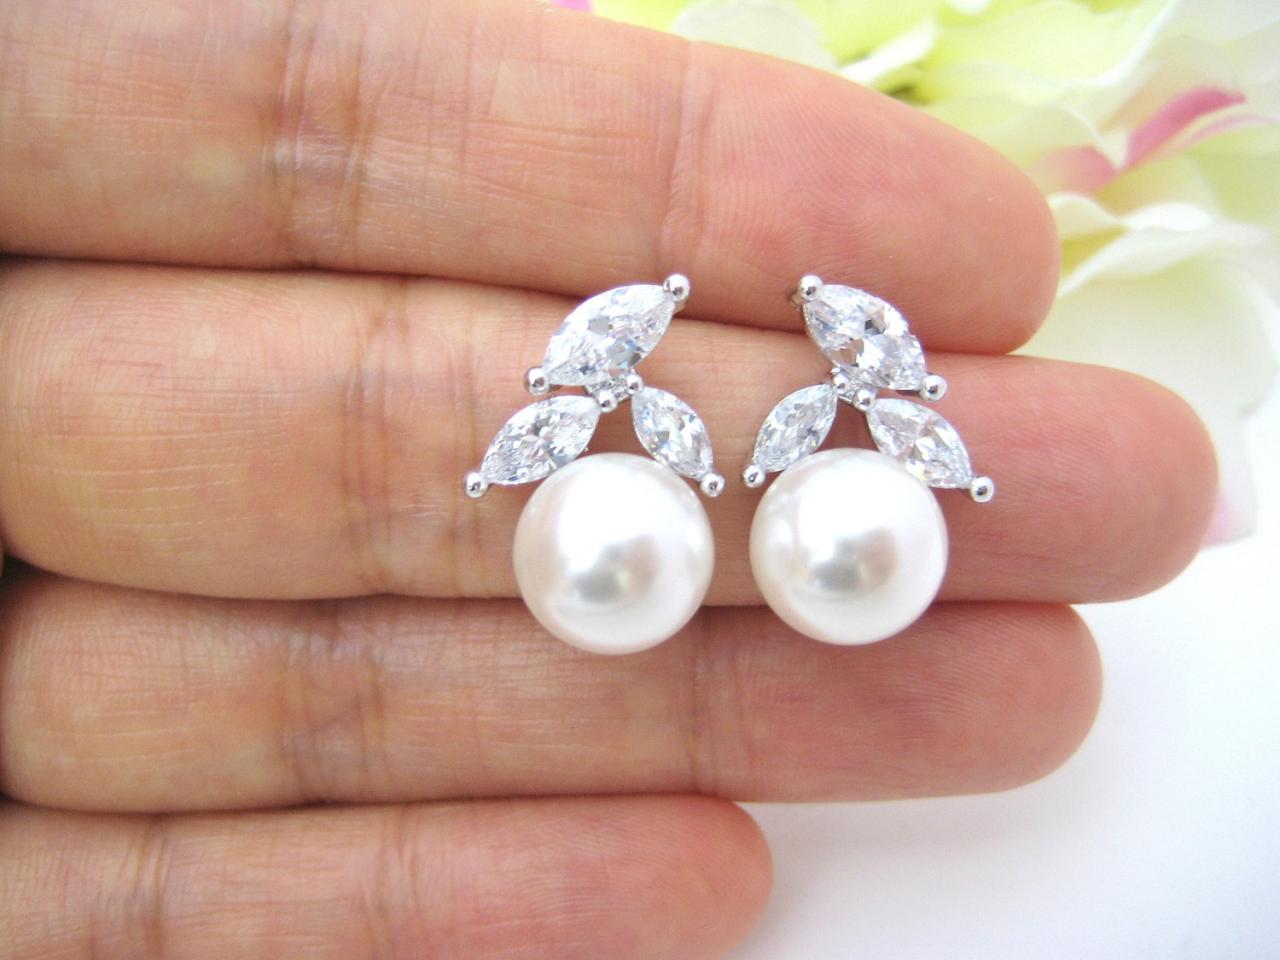 Bridal Pearl Earrings Wedding Jewelry Cubic Zirconia Stud Earrings Swarovski 10mm Pearl Bridesmaids Gift Crystal Stud Earrings